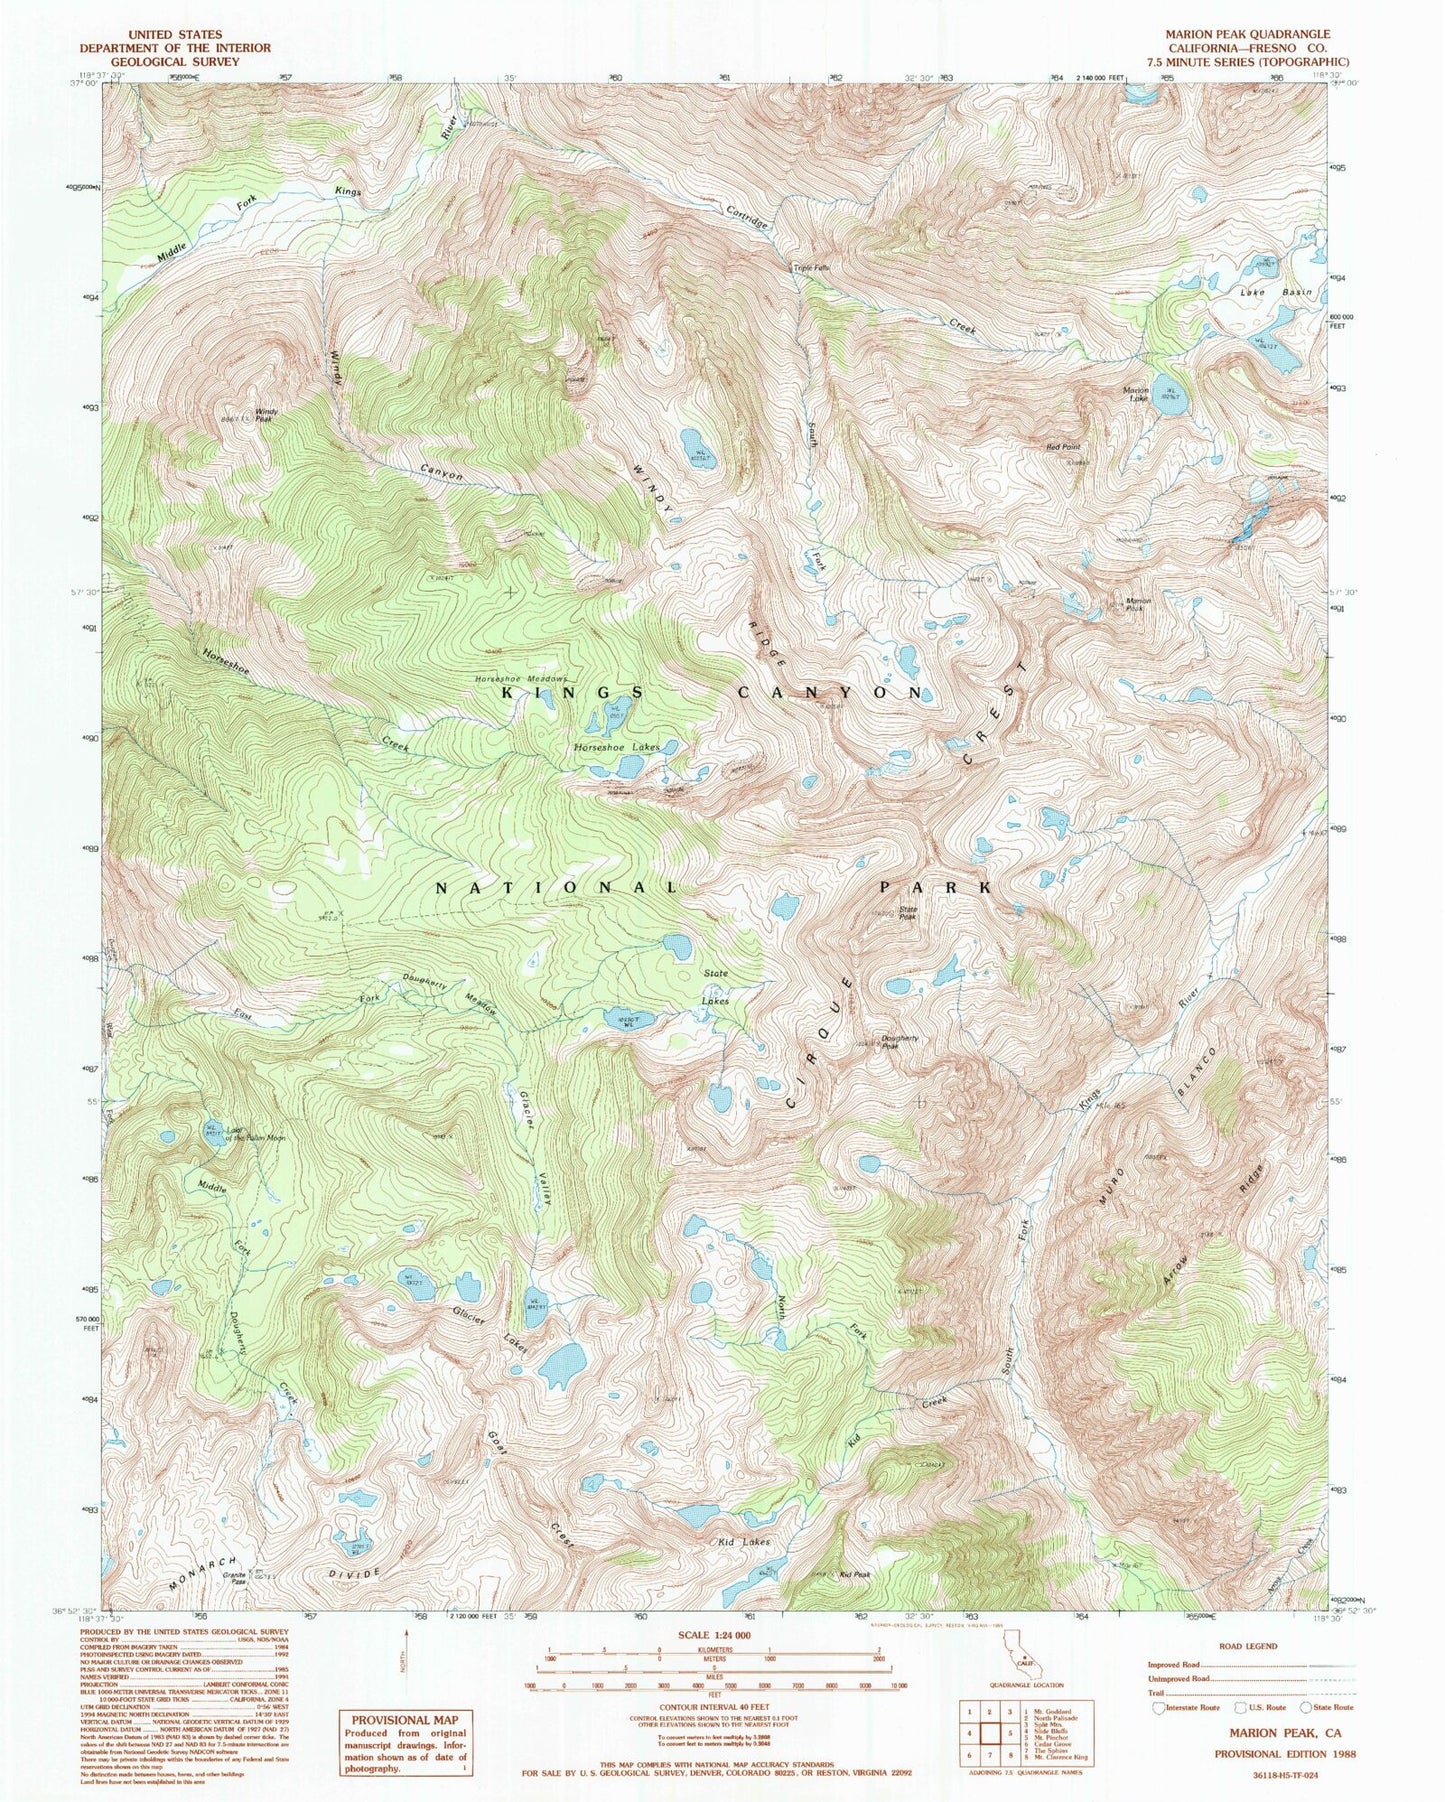 USGS Classic Marion Peak California 7.5'x7.5' Topo Map Image